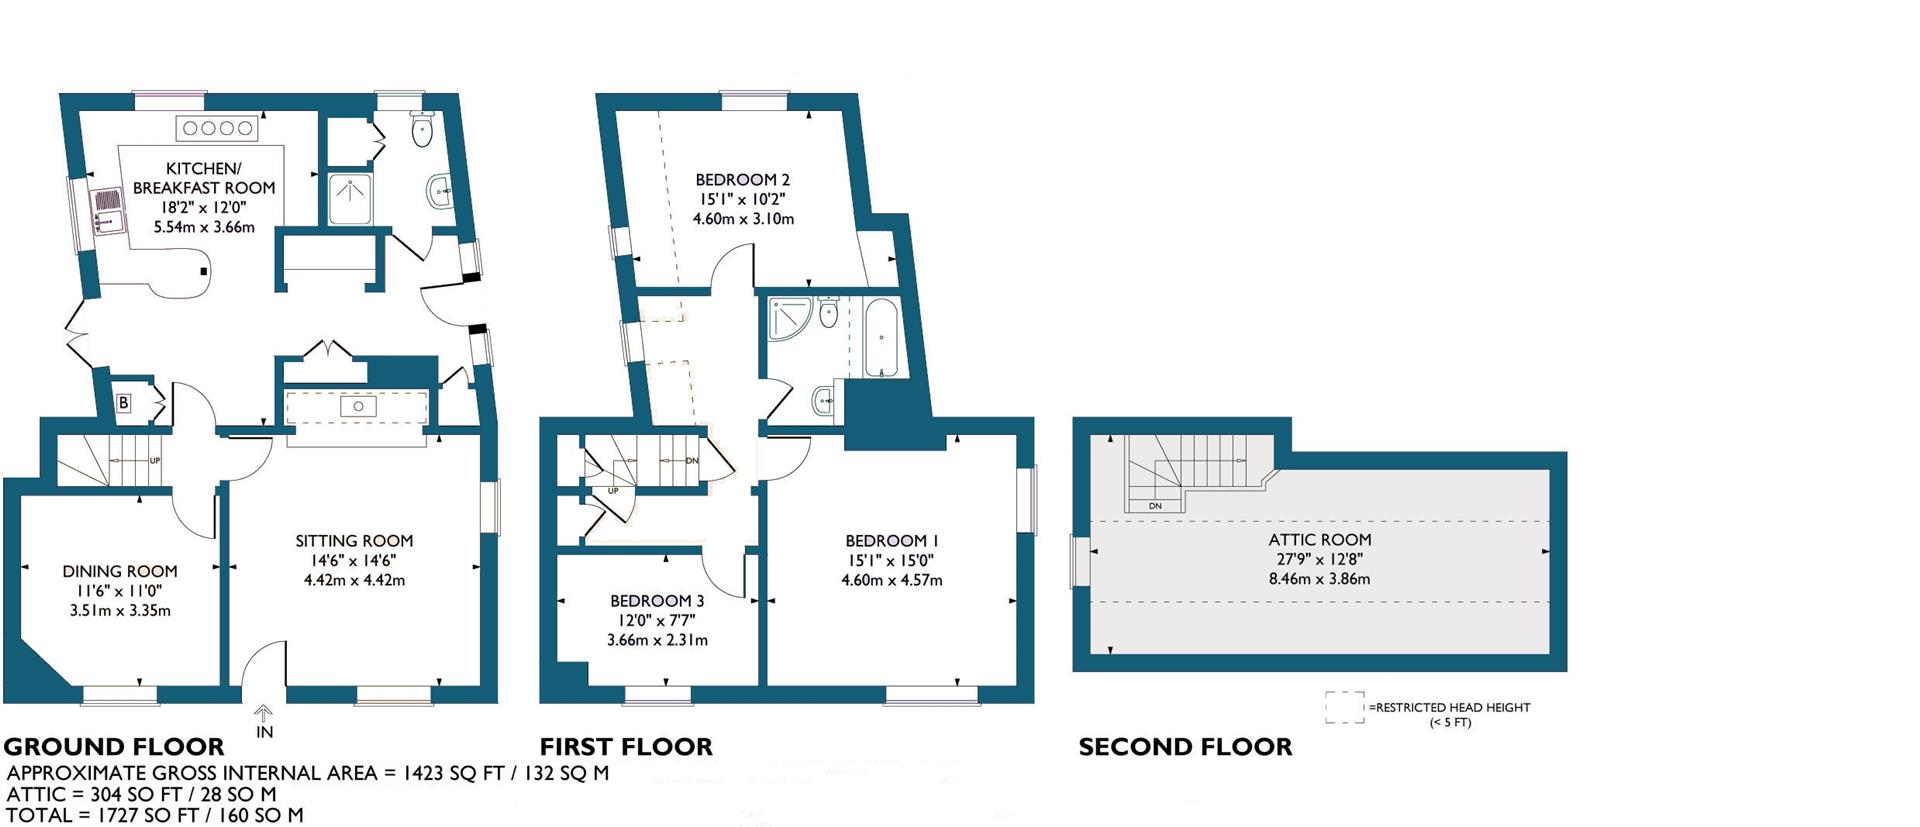 Floorplans For Long Marston